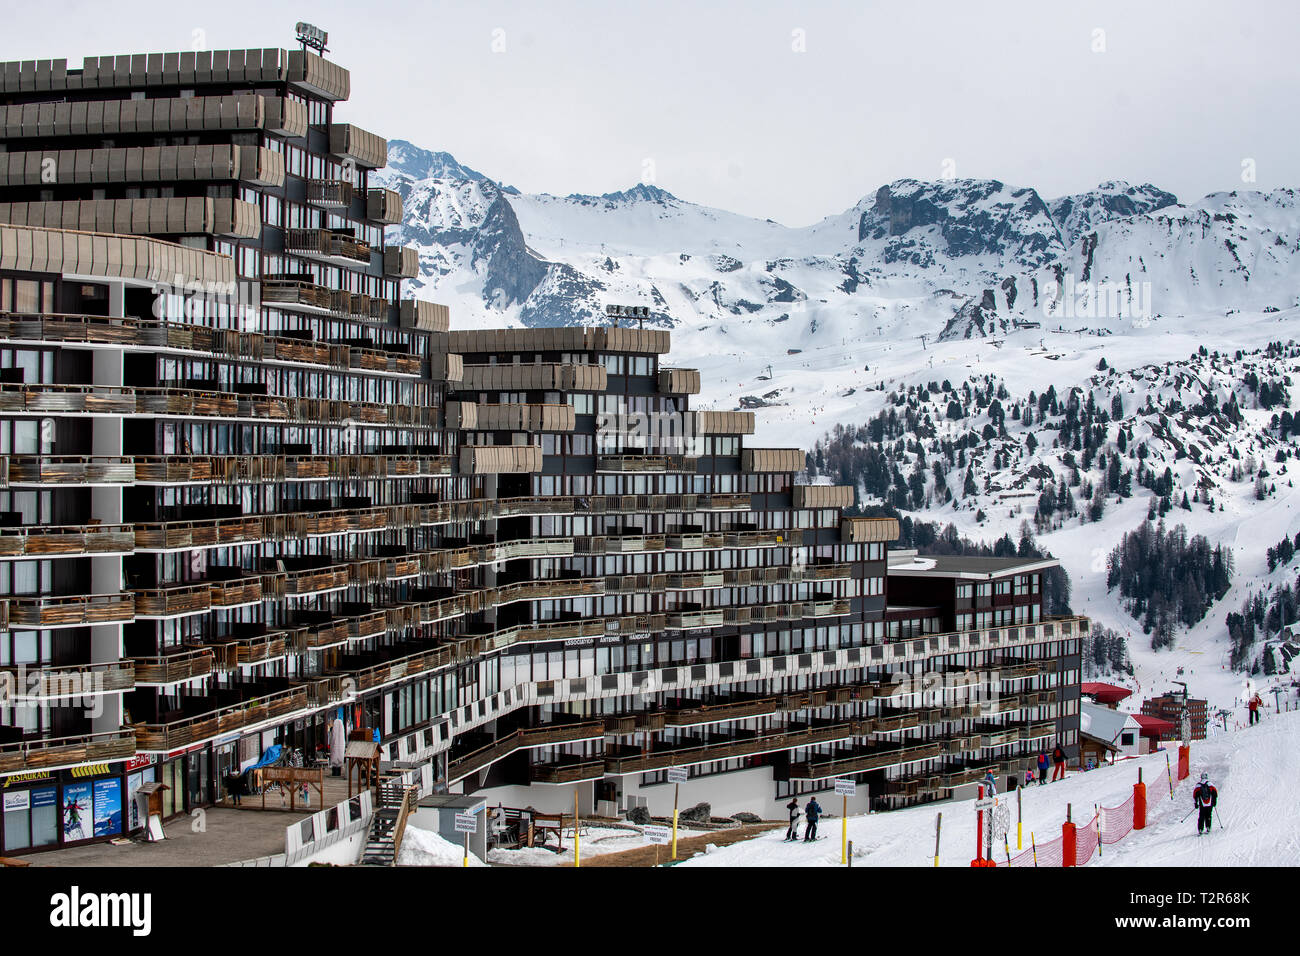 Aime La Plagne 2000 architecture, le paquebot des Neiges, conçu par Michel Bezancon à 2100m dans les alpes Tarentaise. Banque D'Images